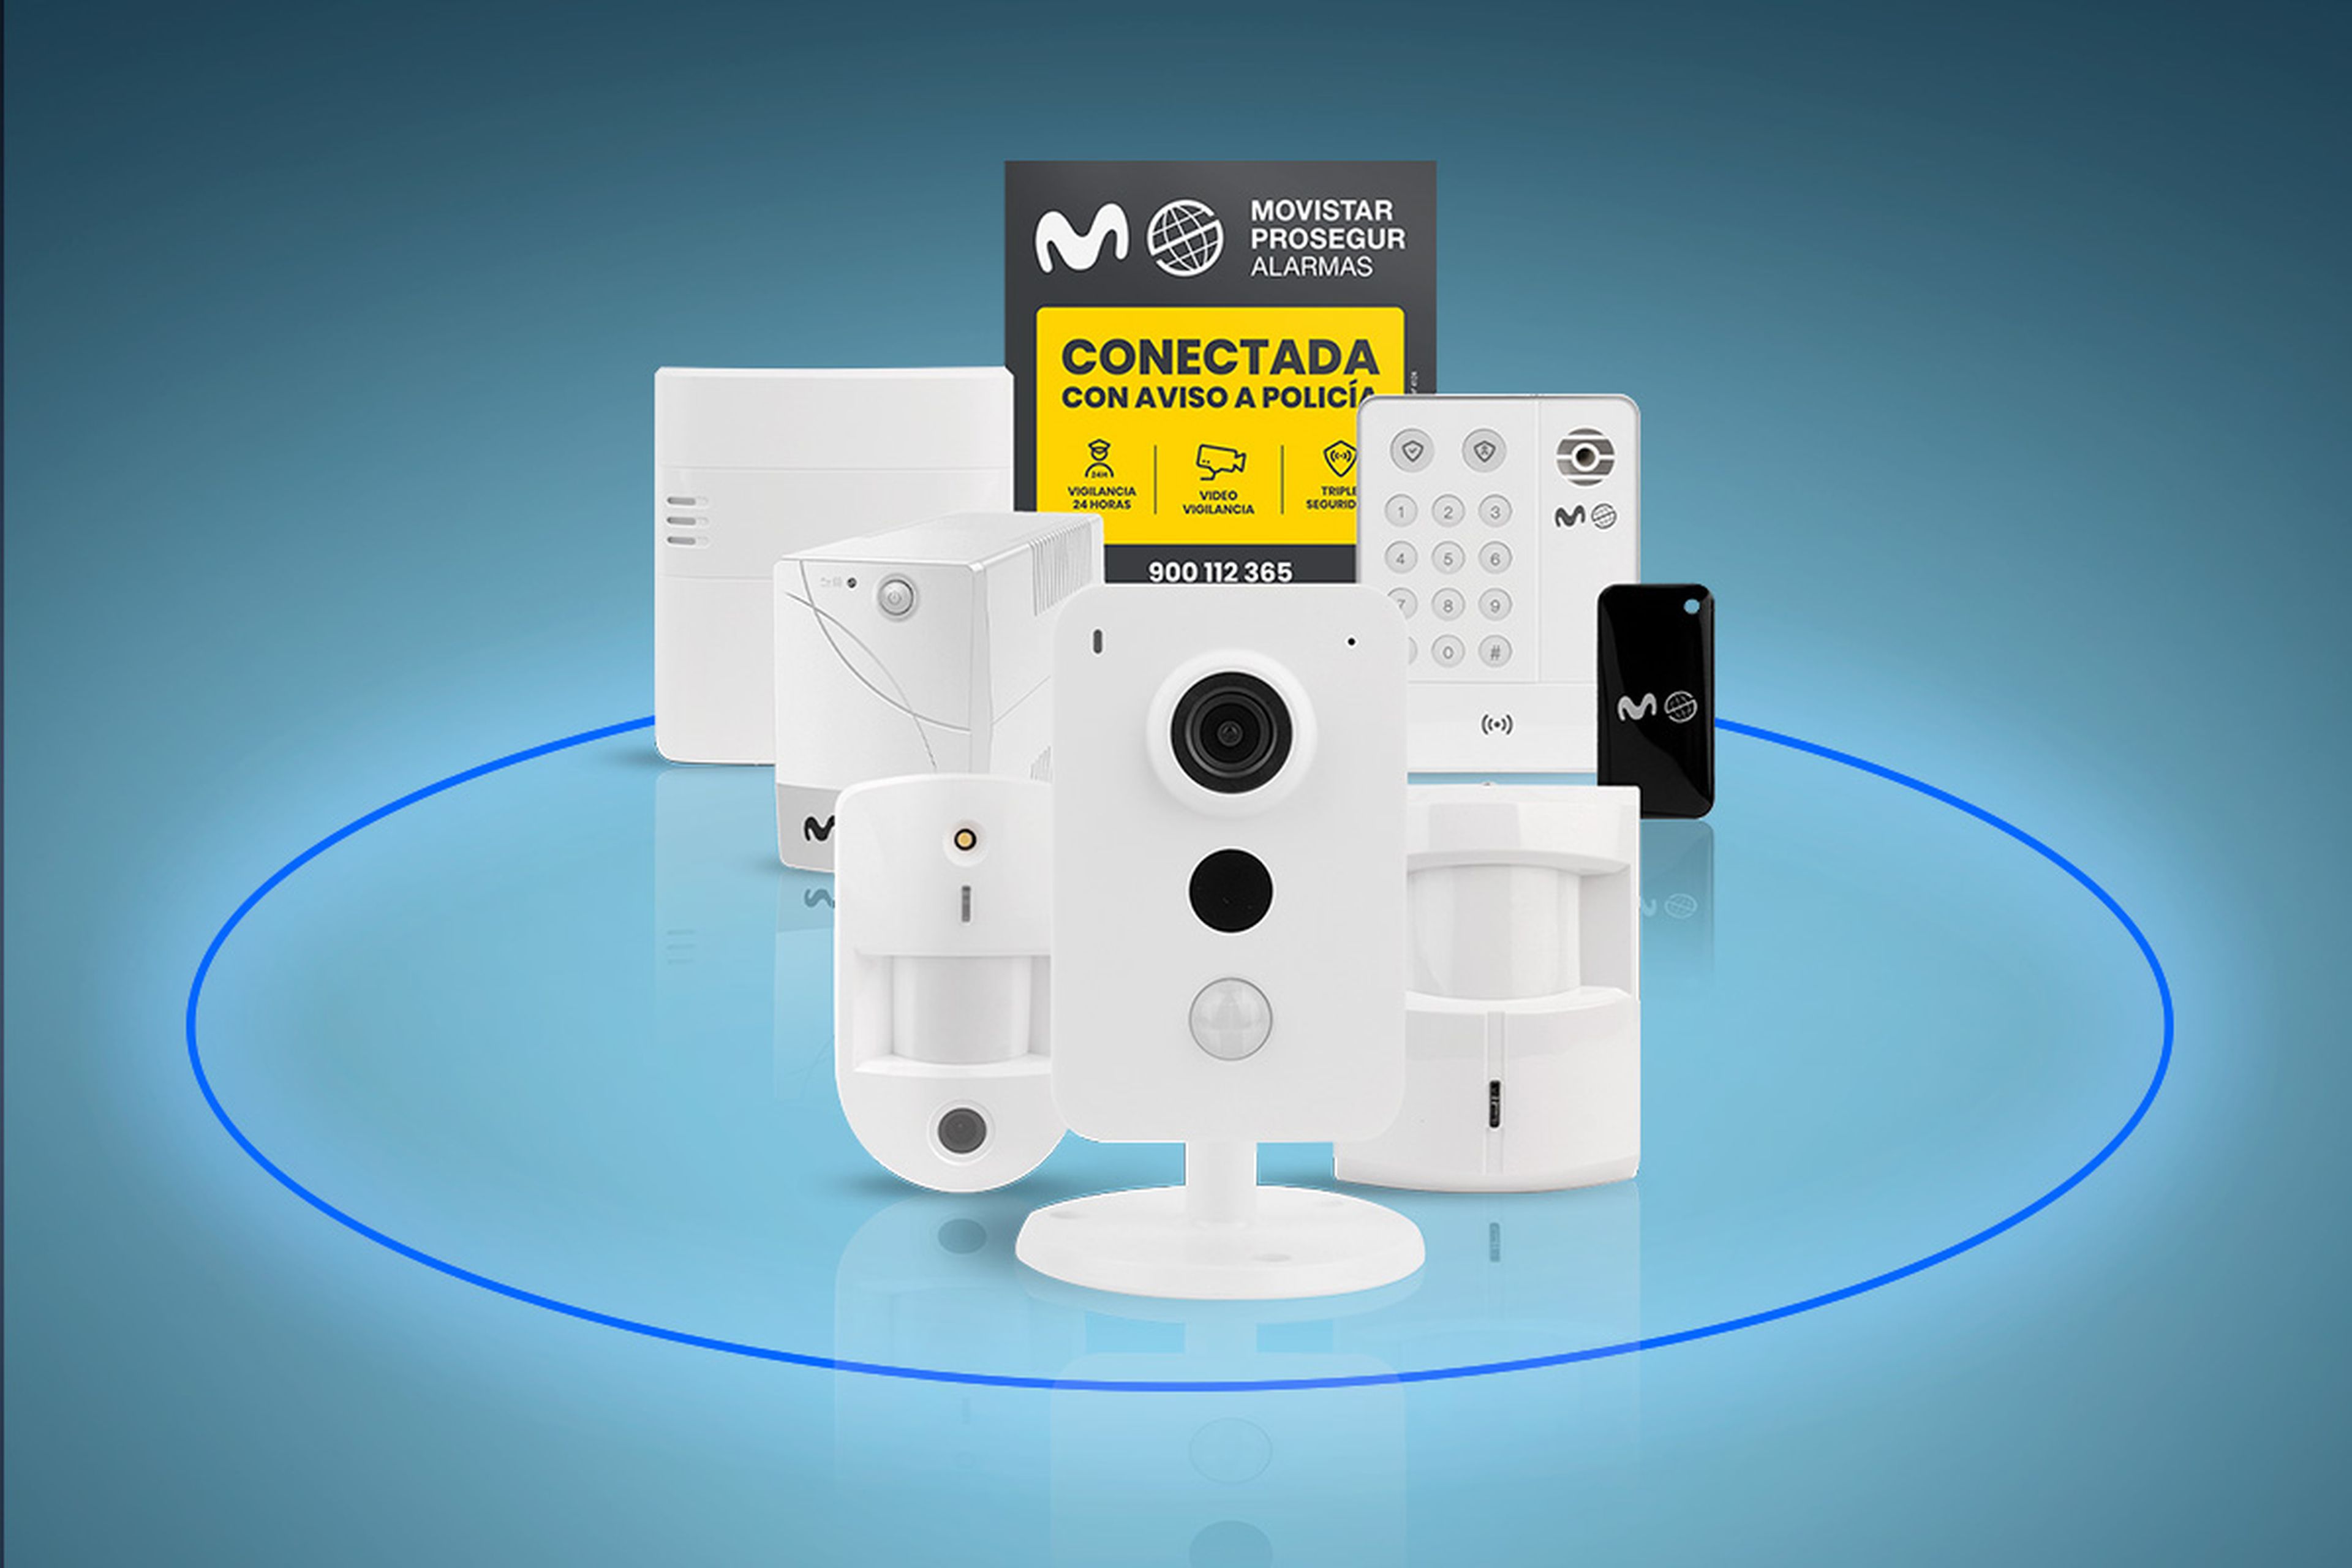 Equipo Movistar Prosegur Alarmas: detectores y cámara de seguridad conectada a su Central Receptora de Alarmas y con el Servicio Vigilante Acuda